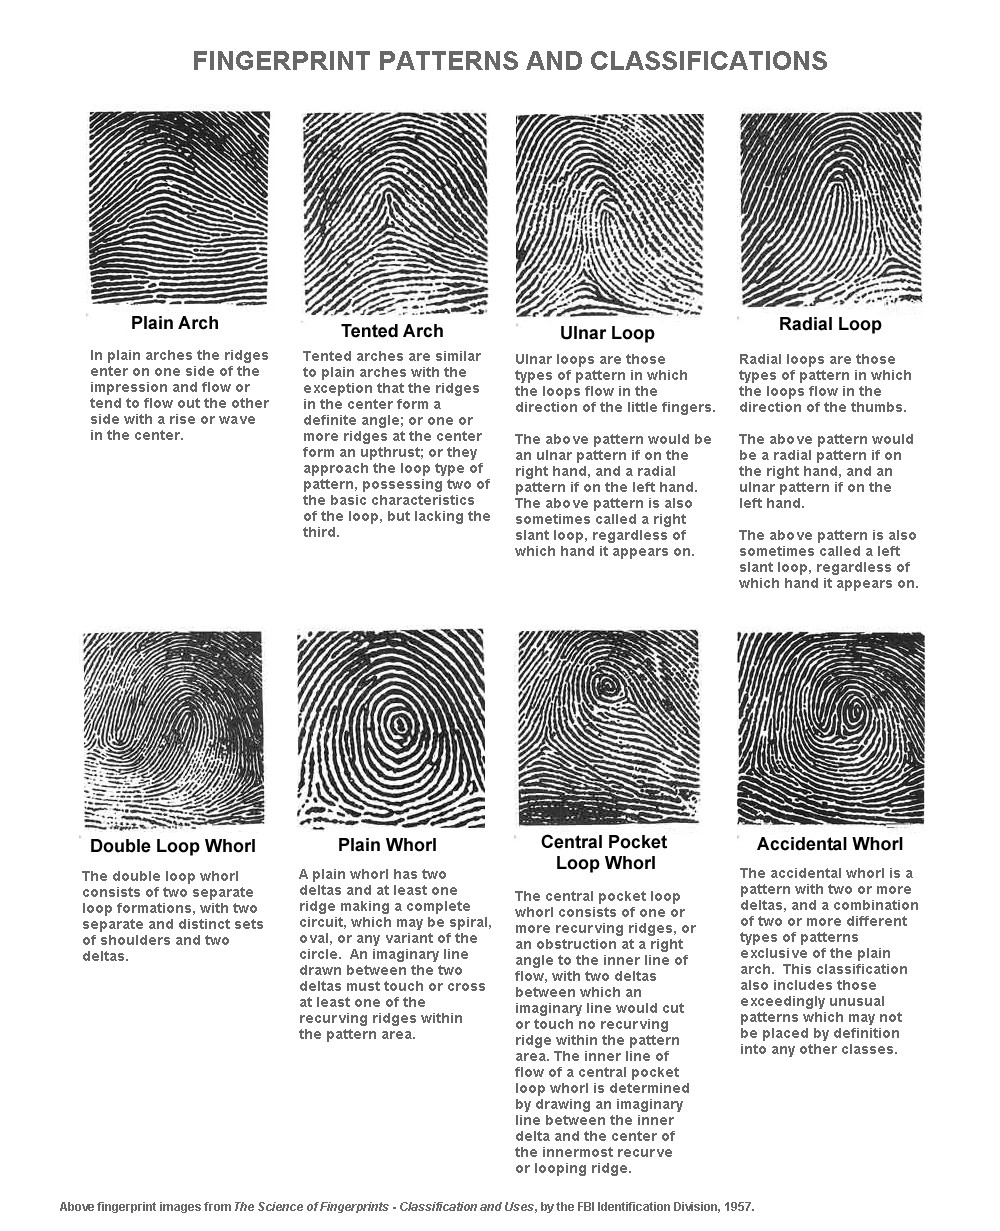 F.B.I. fingerprint classification: 8 types.